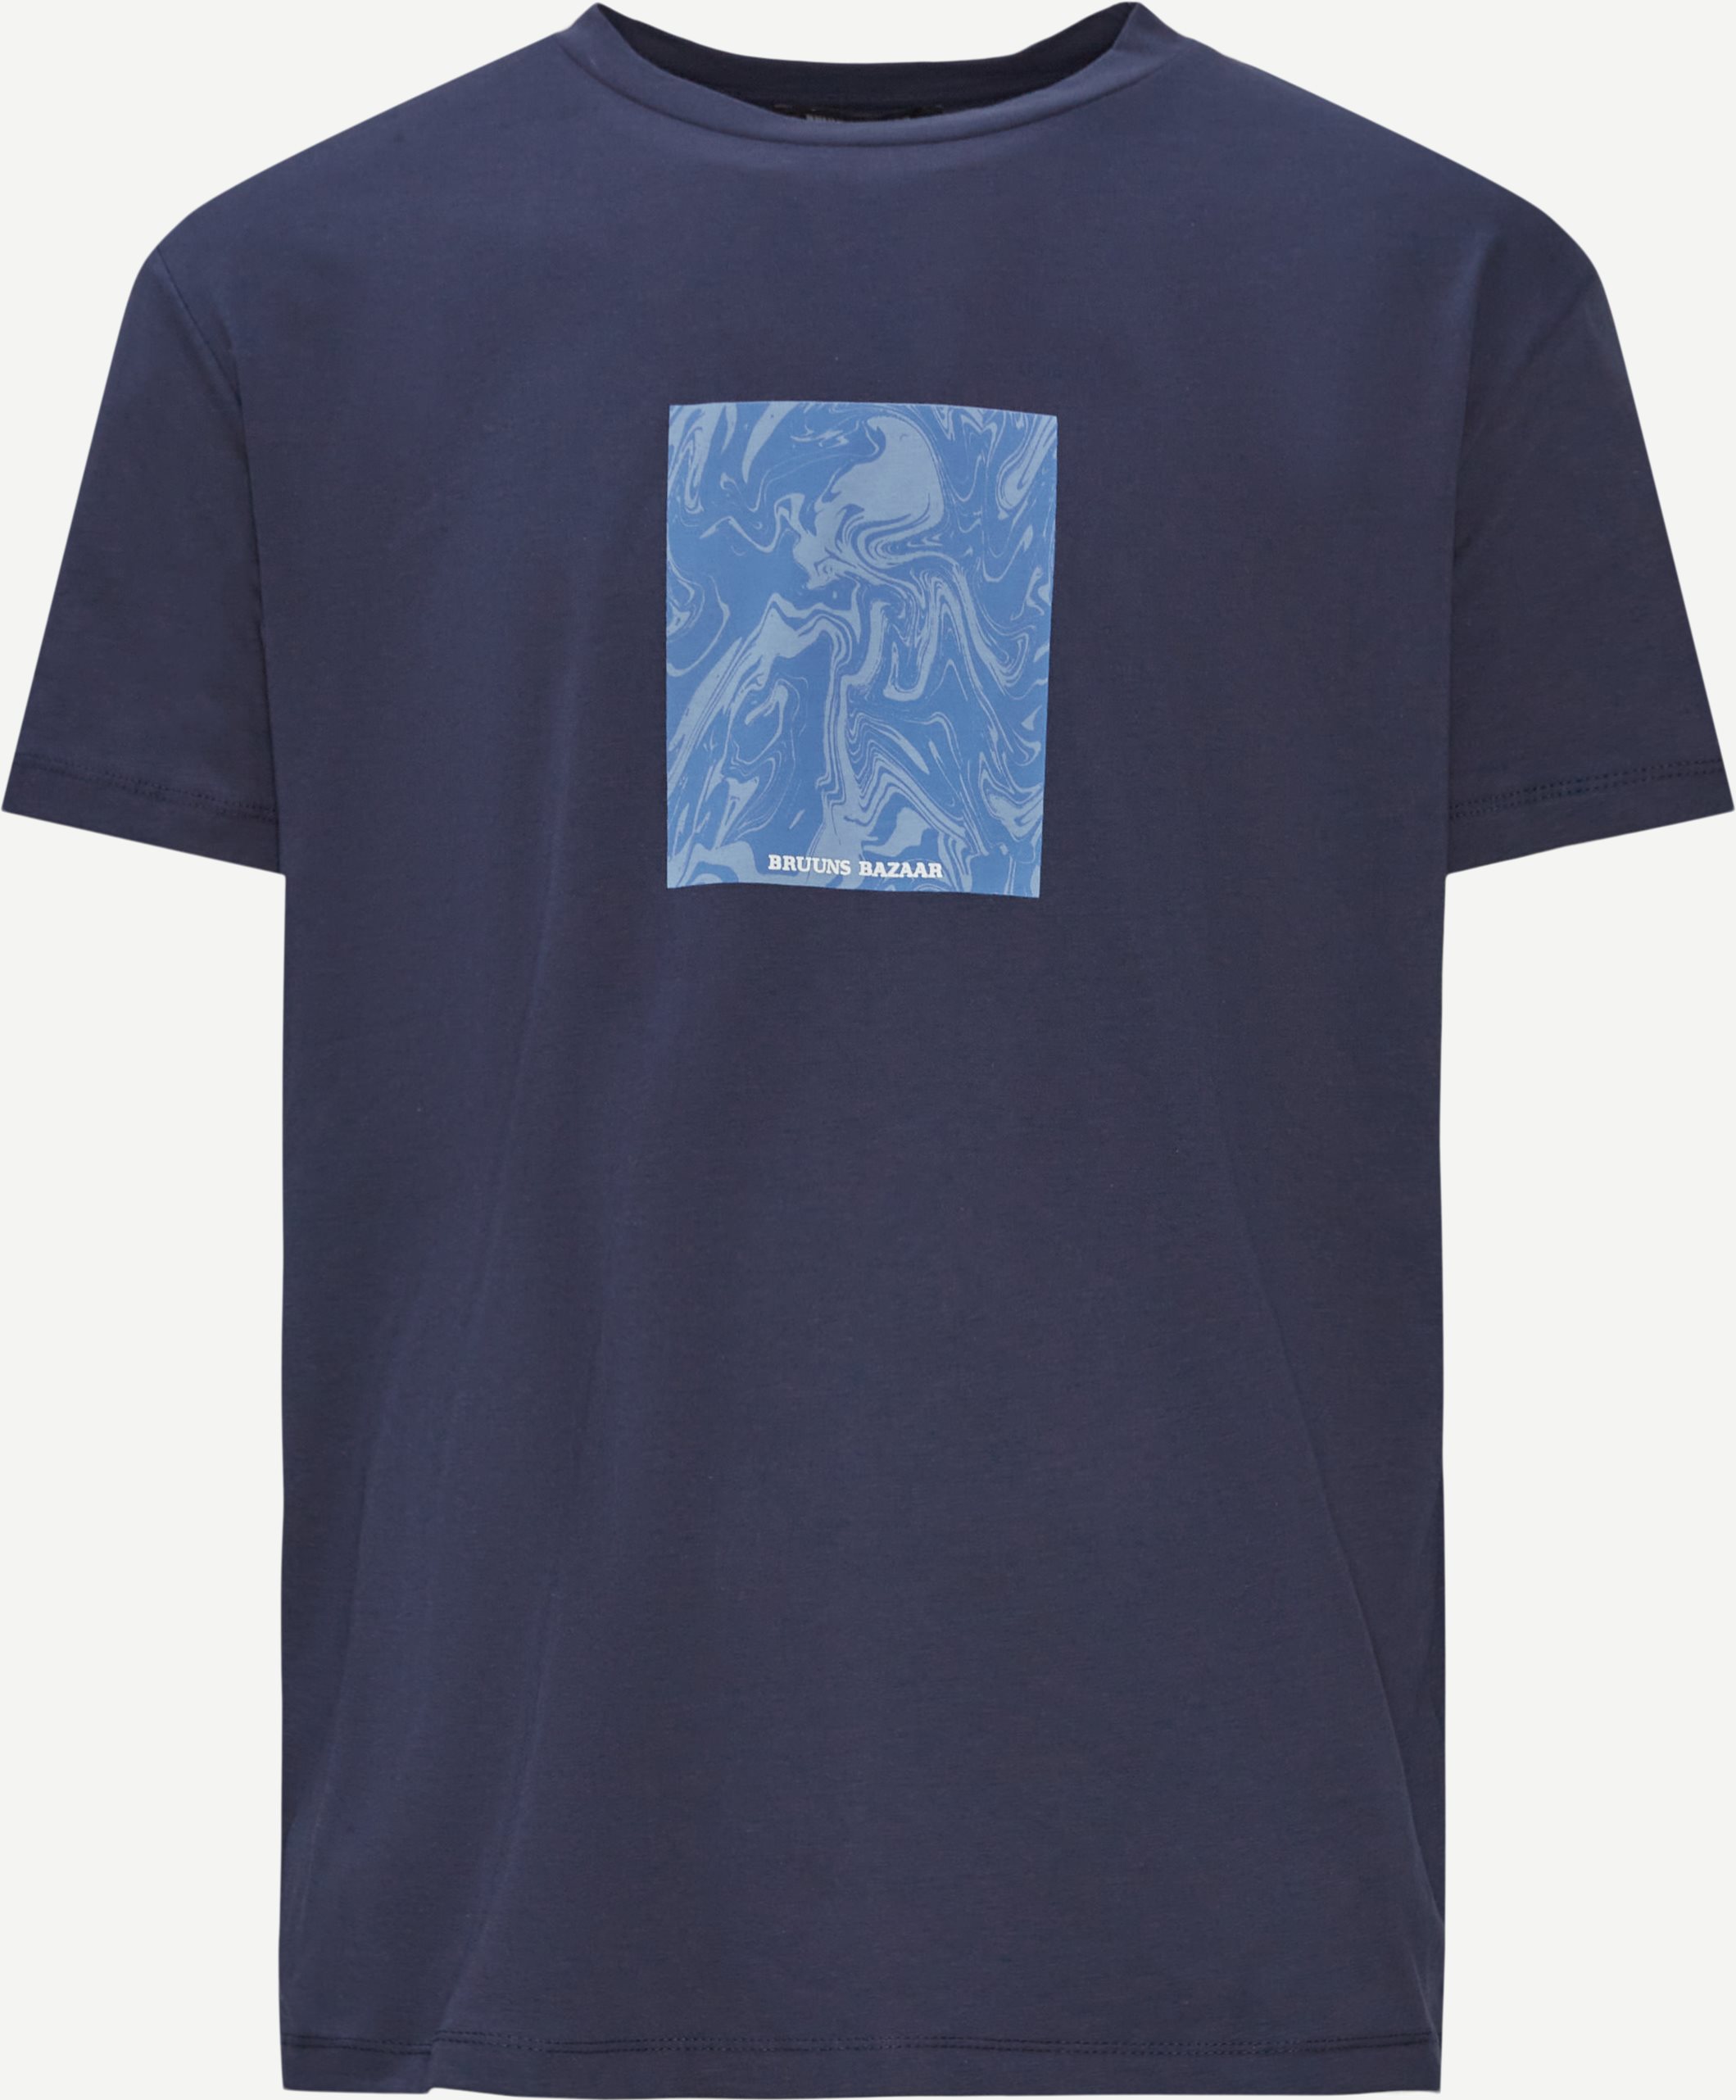 Gus Ice T-shirt - T-shirts - Regular fit - Blå